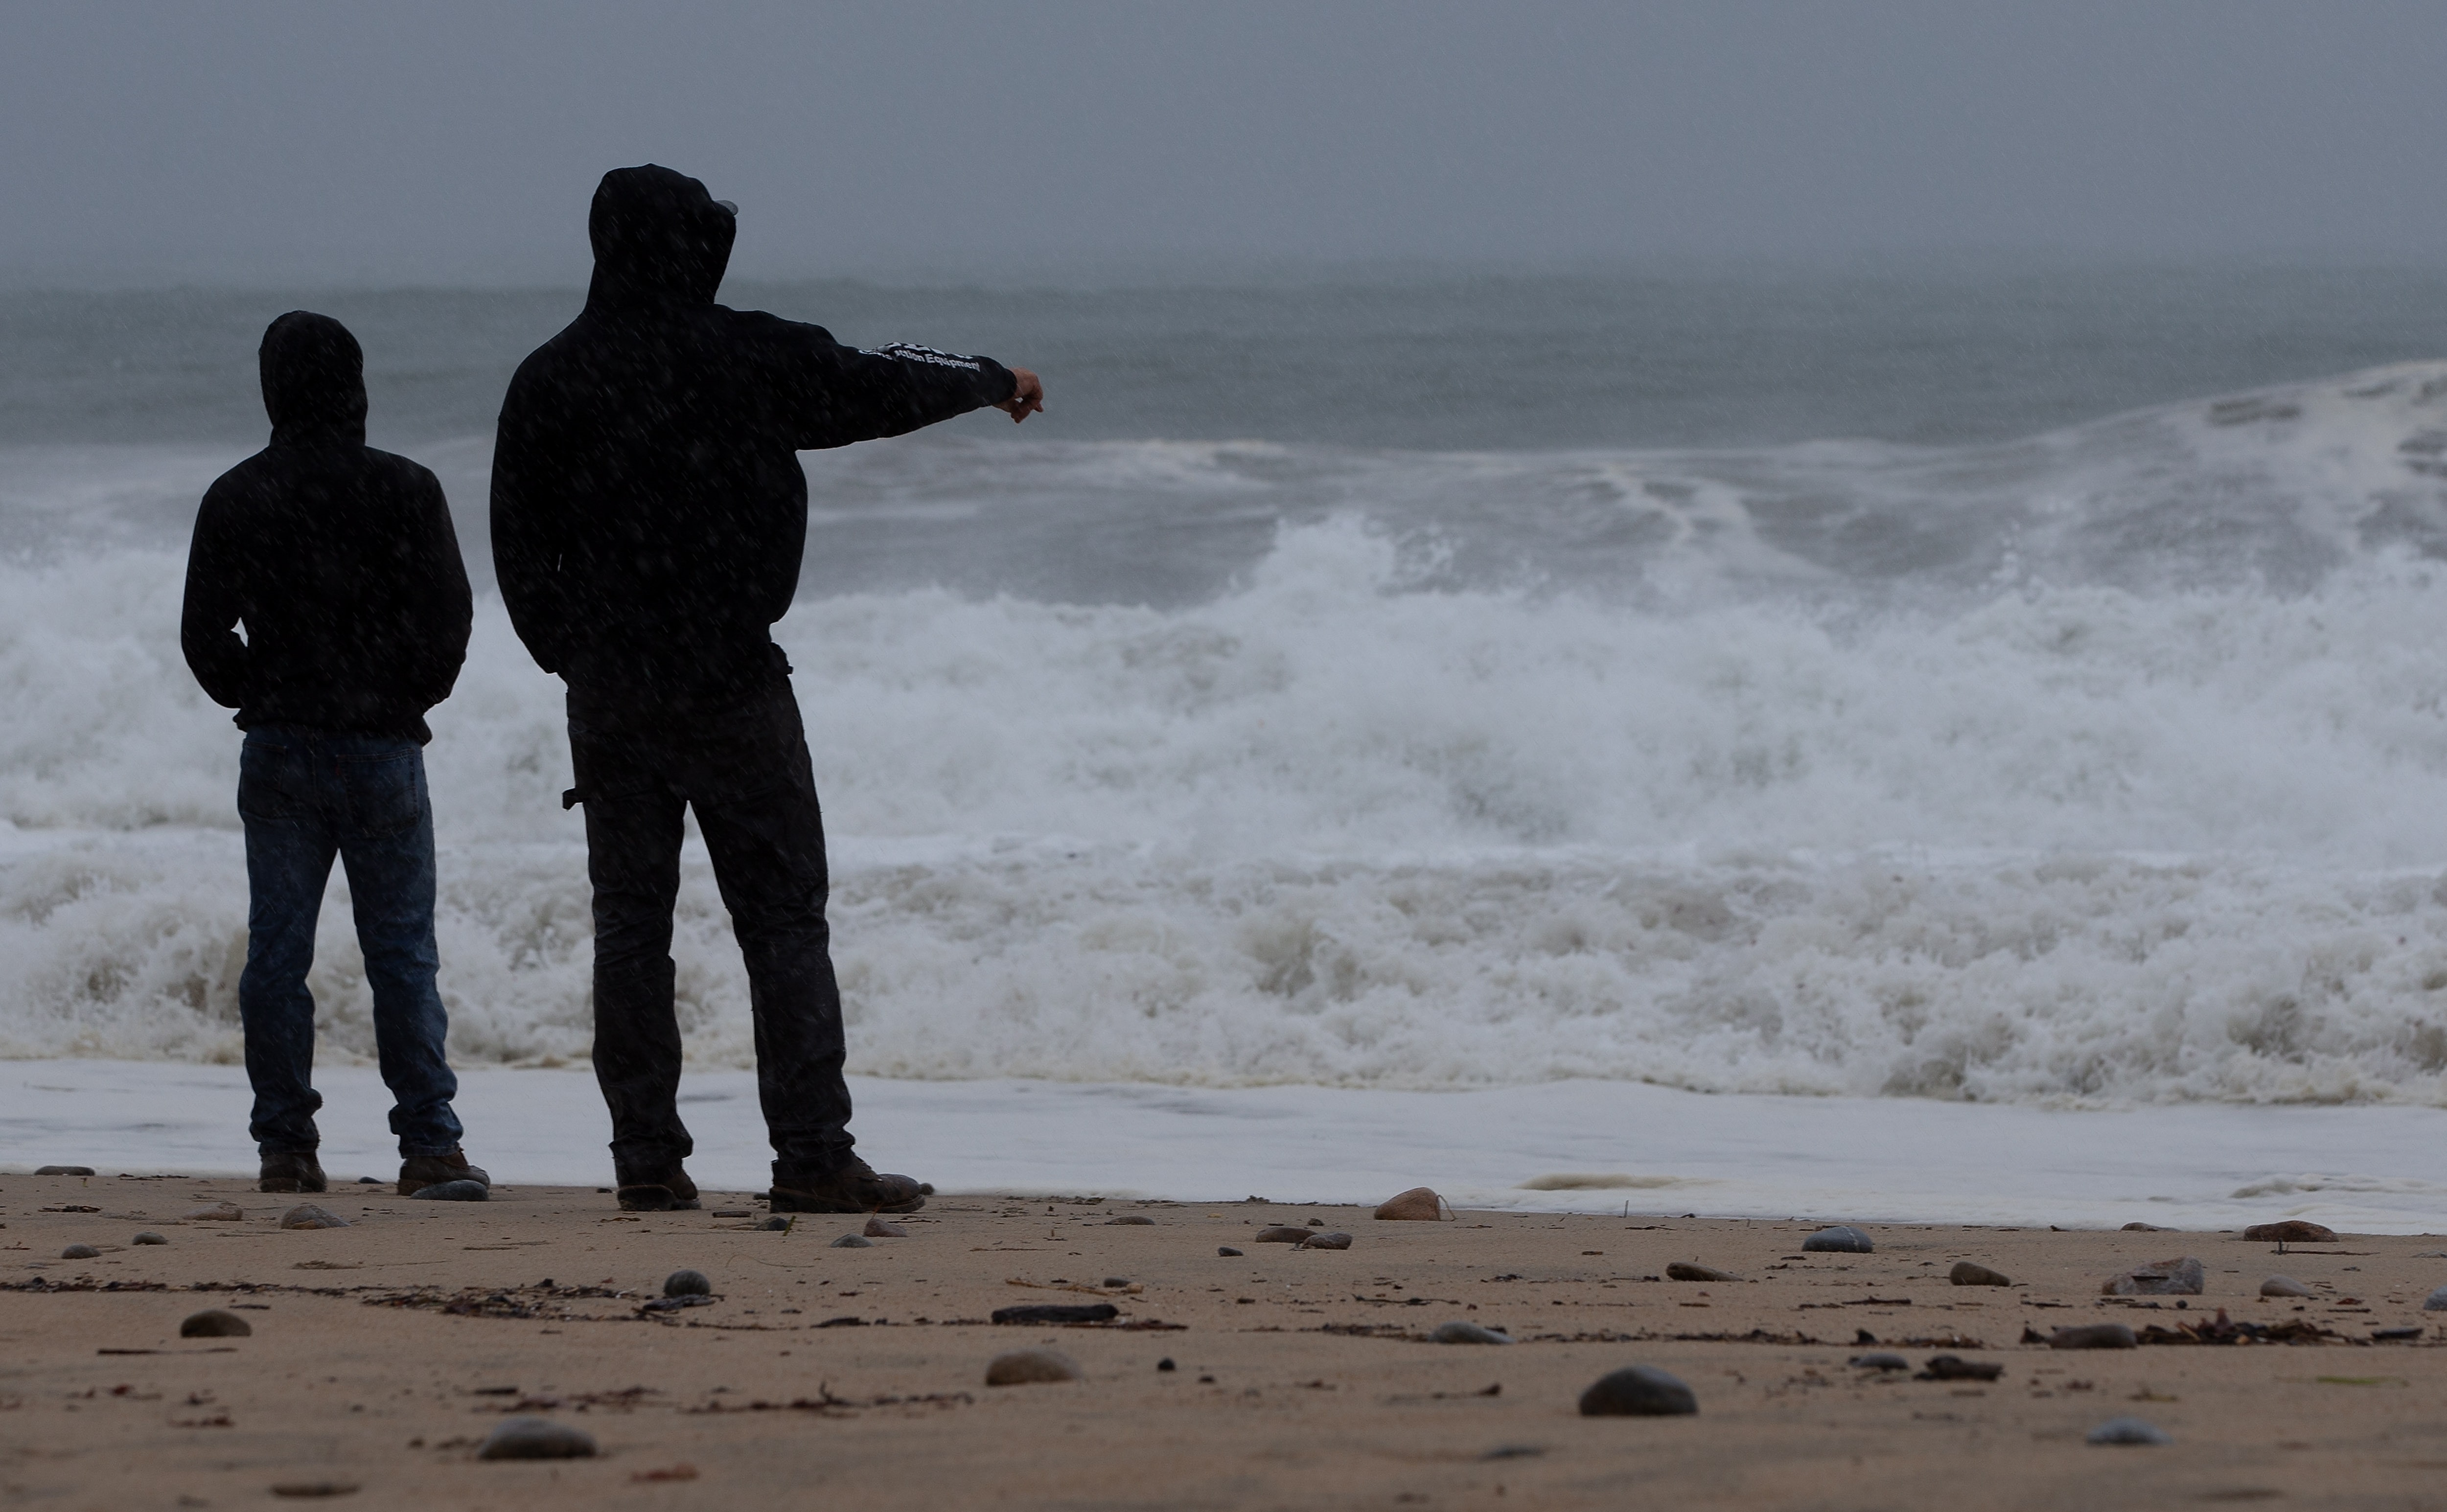 Henri producirá una marejada ciclónica, con riesgo de subida del nivel del mar de hasta 1.50 metros en algunos puntos de la costa. Fotografía: EFE. 